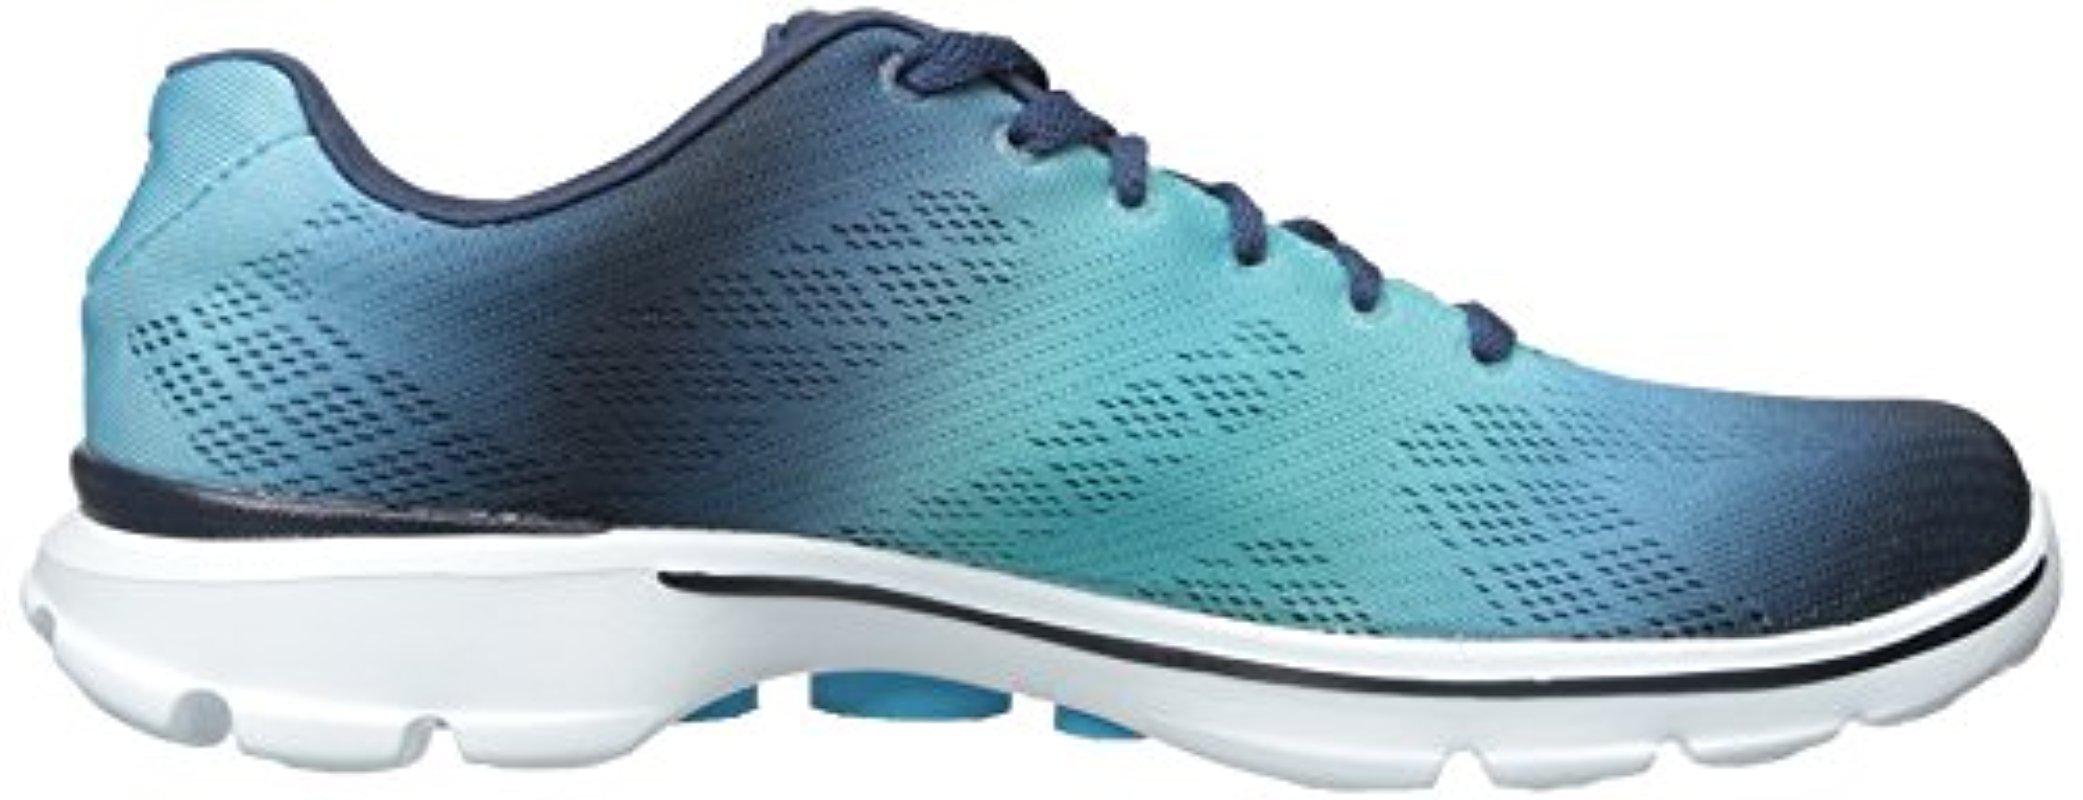 Skechers Performance Go Walk 3 Lace-up Walking Shoe in Blue | Lyst